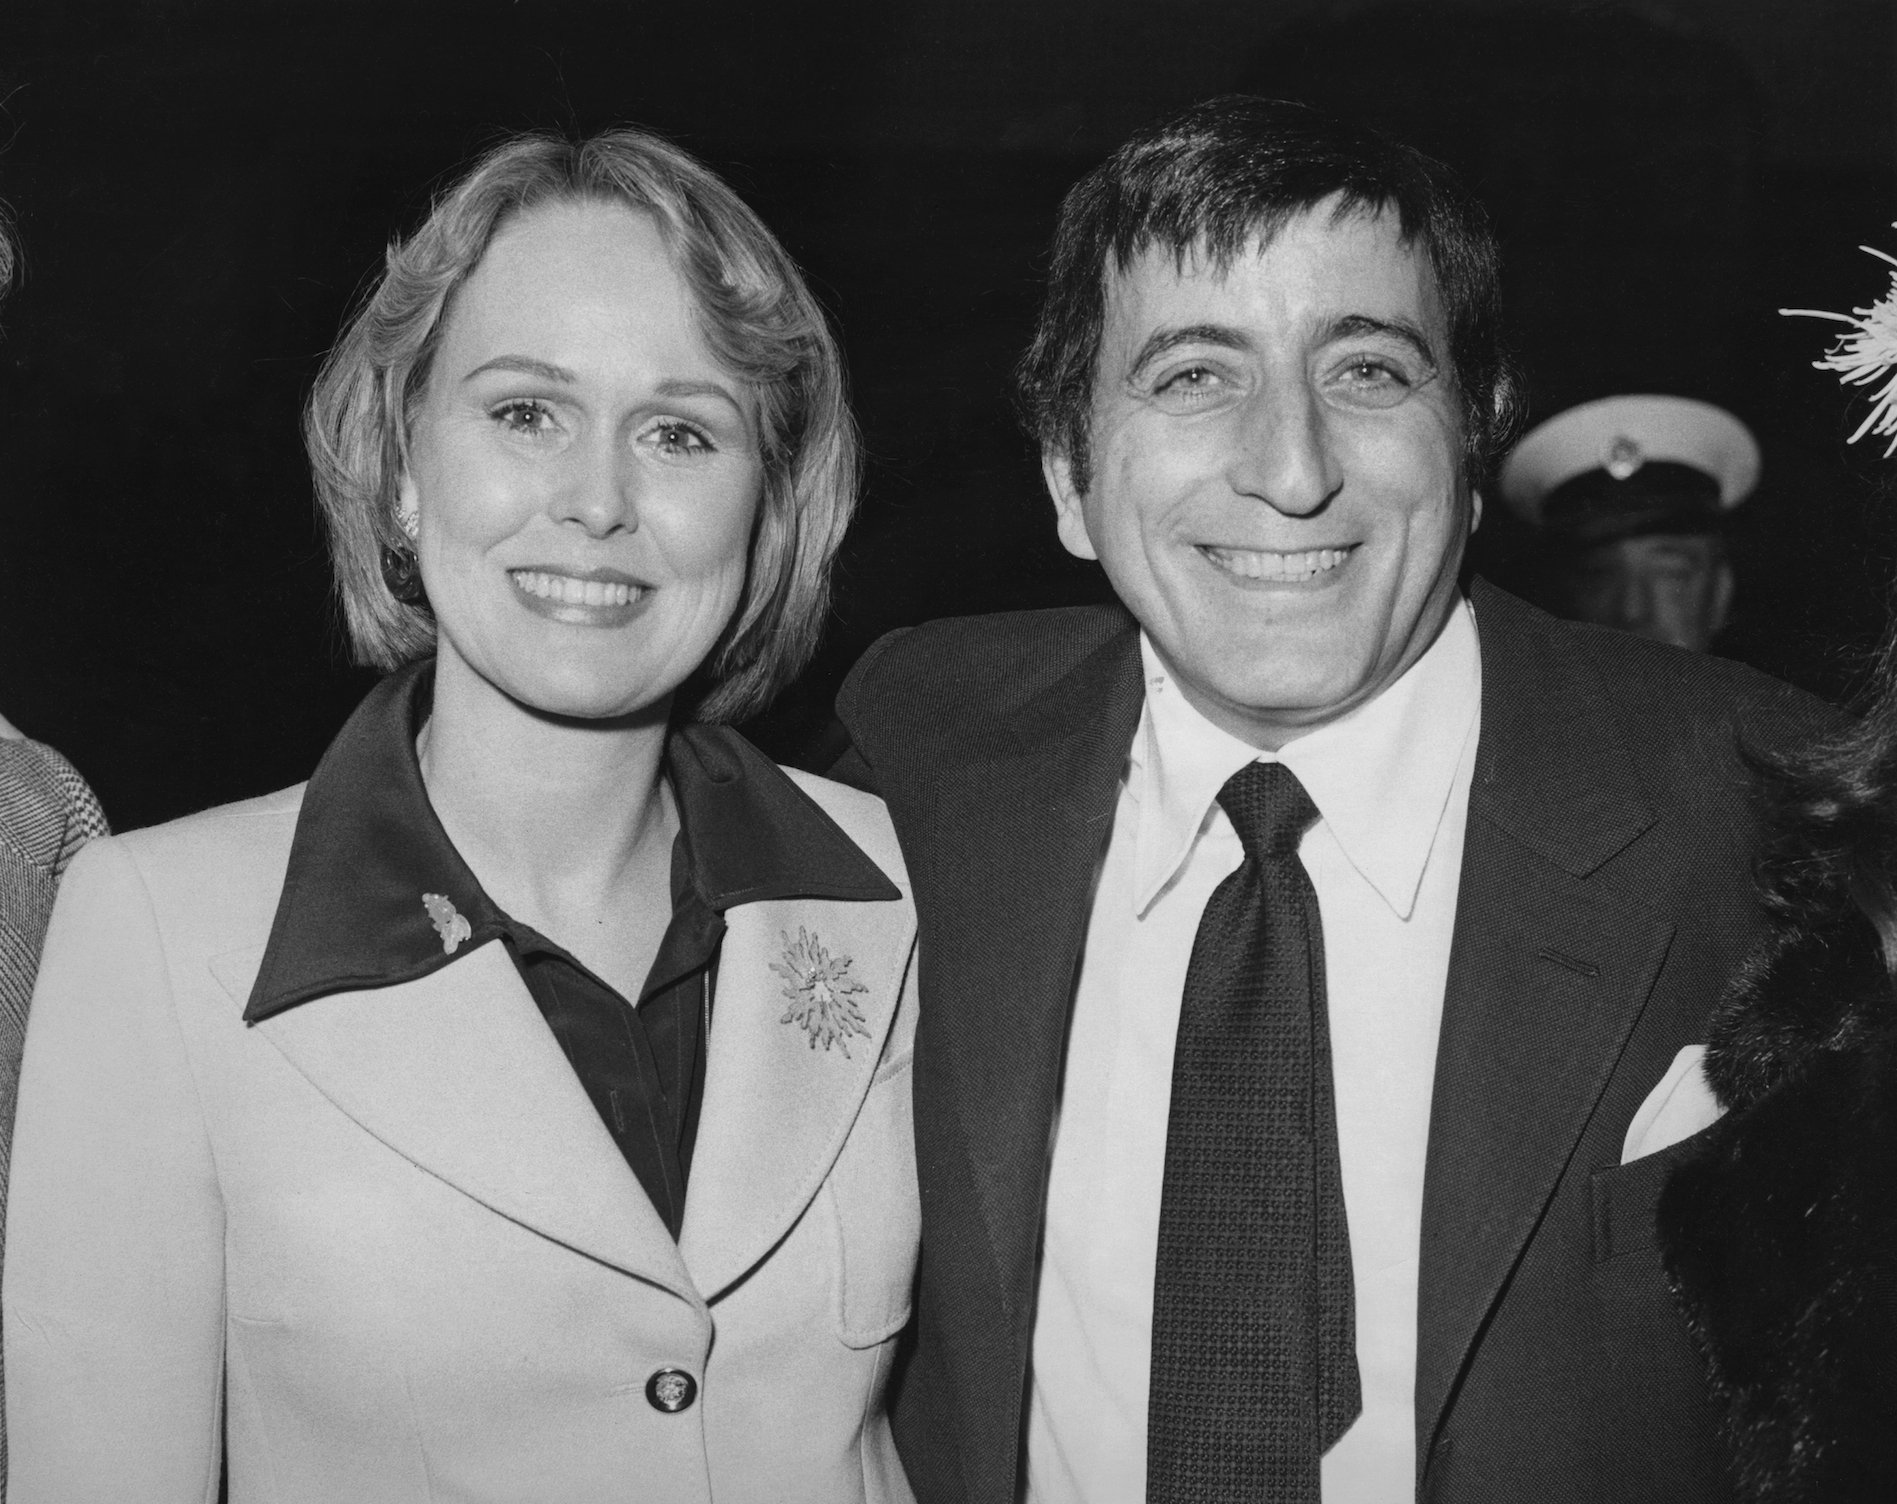 Tony Bennett and his wife, actor Sandra Grant Bennett in 1973